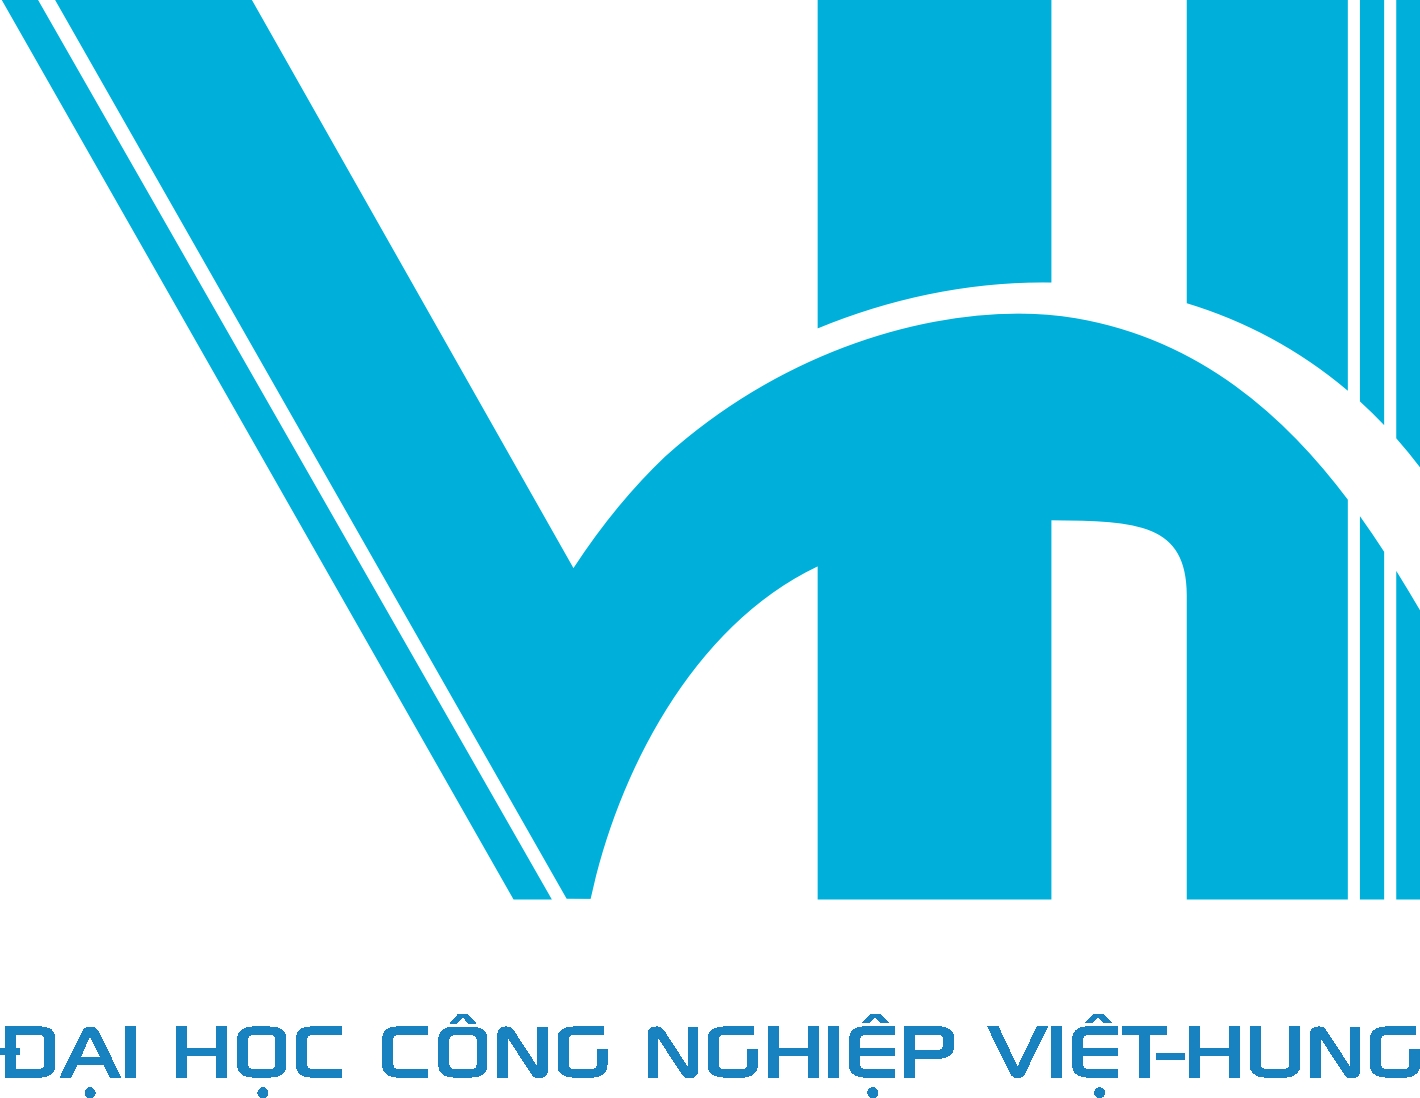 logo của trường VHD - Đại học công nghiệp Việt - Hung